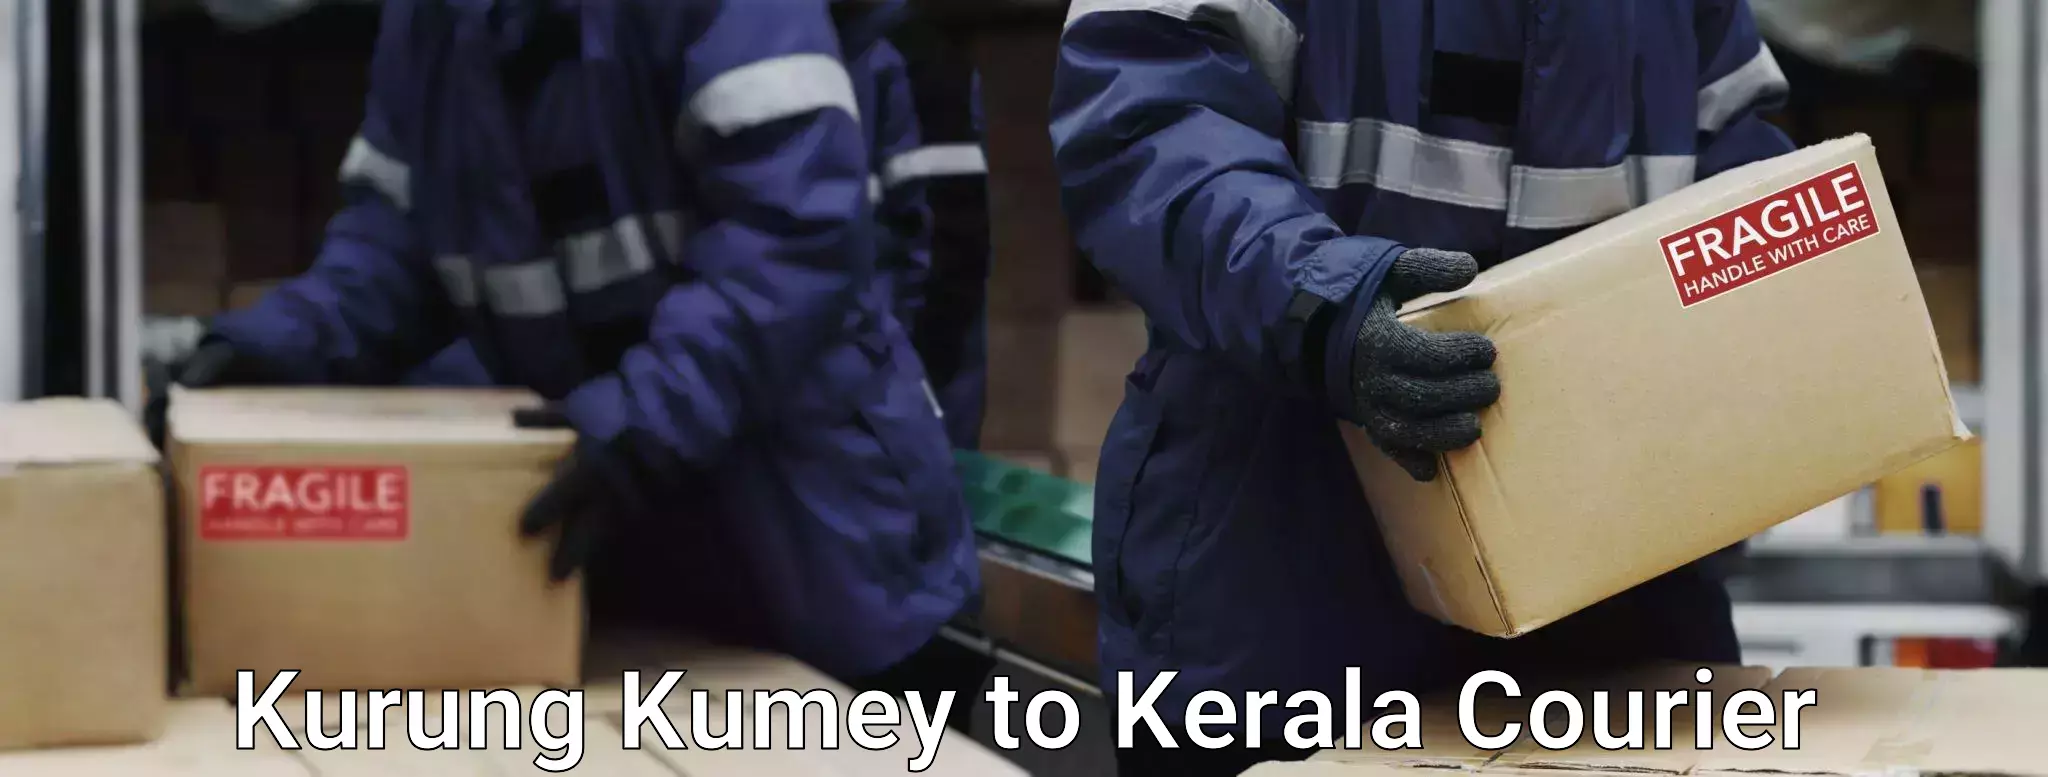 Baggage shipping rates calculator Kurung Kumey to Mahe